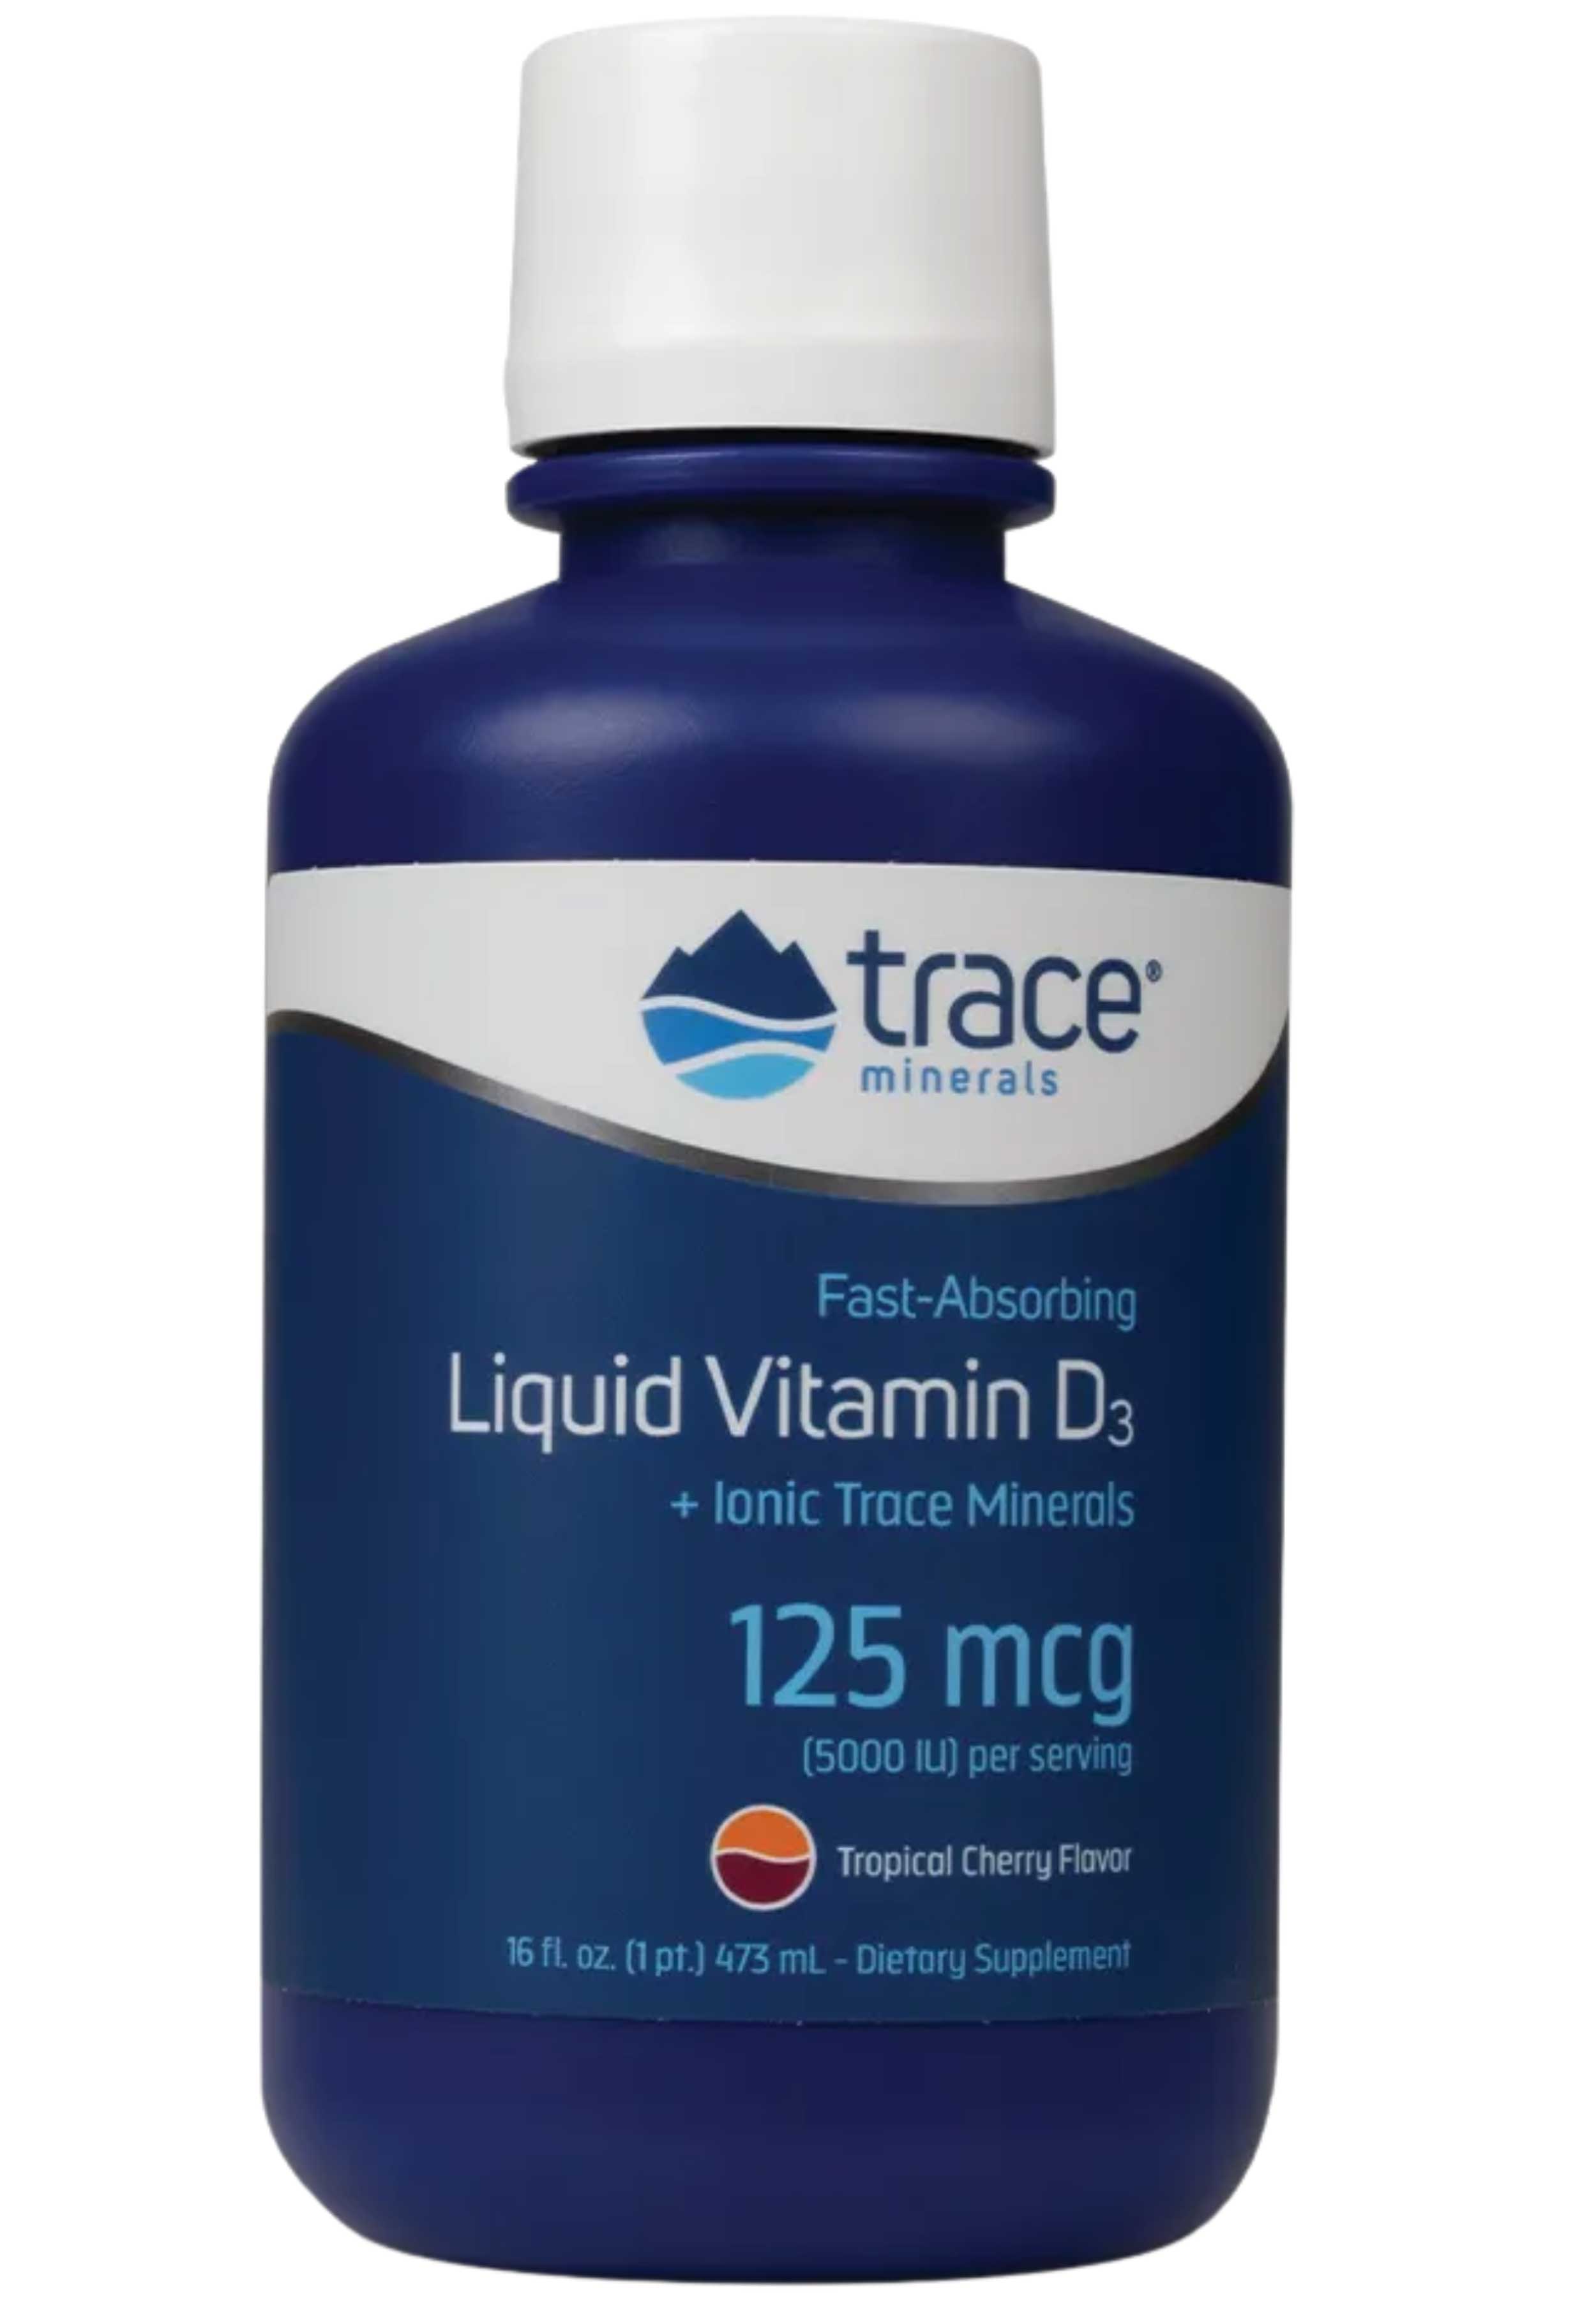 Trace Minerals Research Liquid Vitamin D3